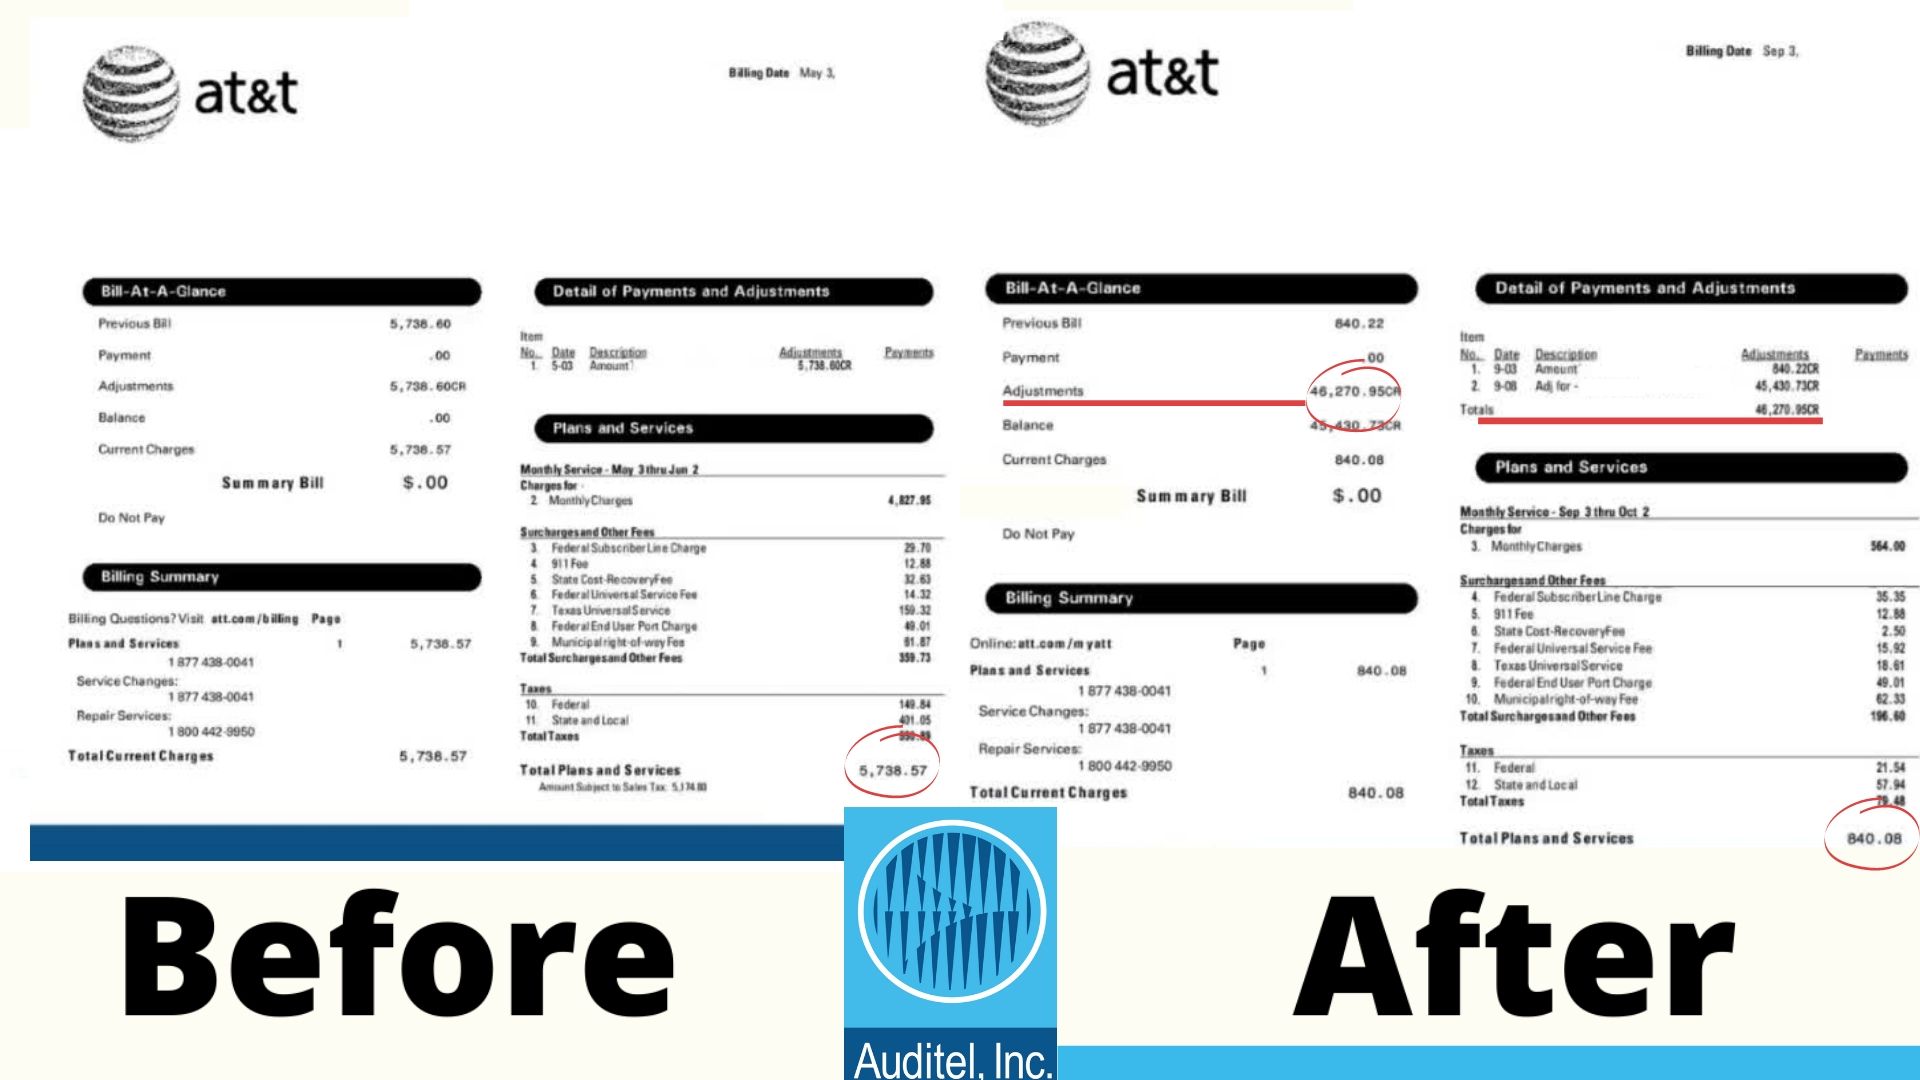 telecom savings examples savings example sample telecom tax audit taxes auditor USF tax auditor FUSF tax 911 tax auditor before after sample cost savings telecom expense management